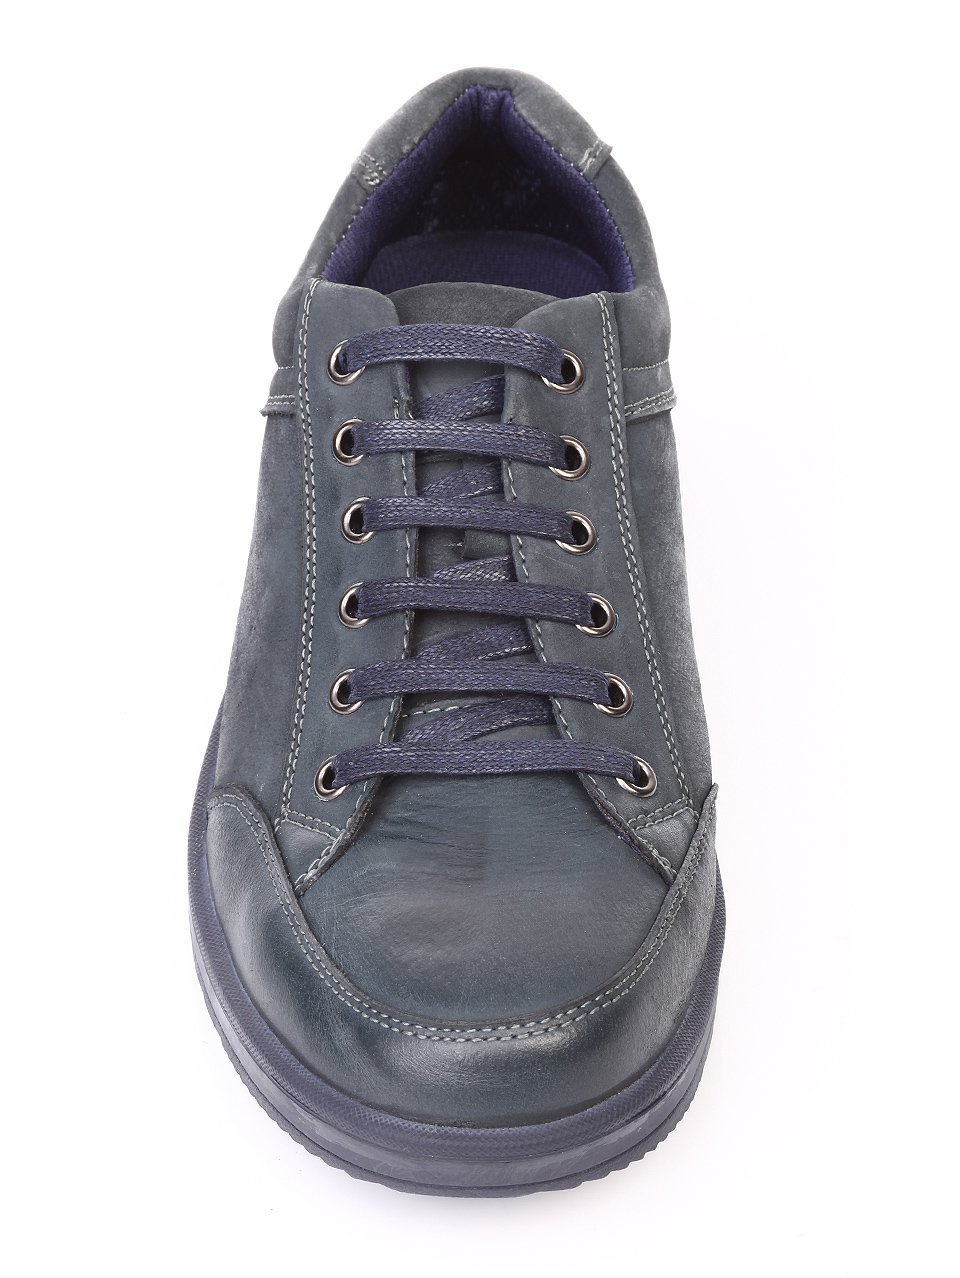 Ежедневни мъжки обувки от естествен нбаук в синьо 7N-17785 navy